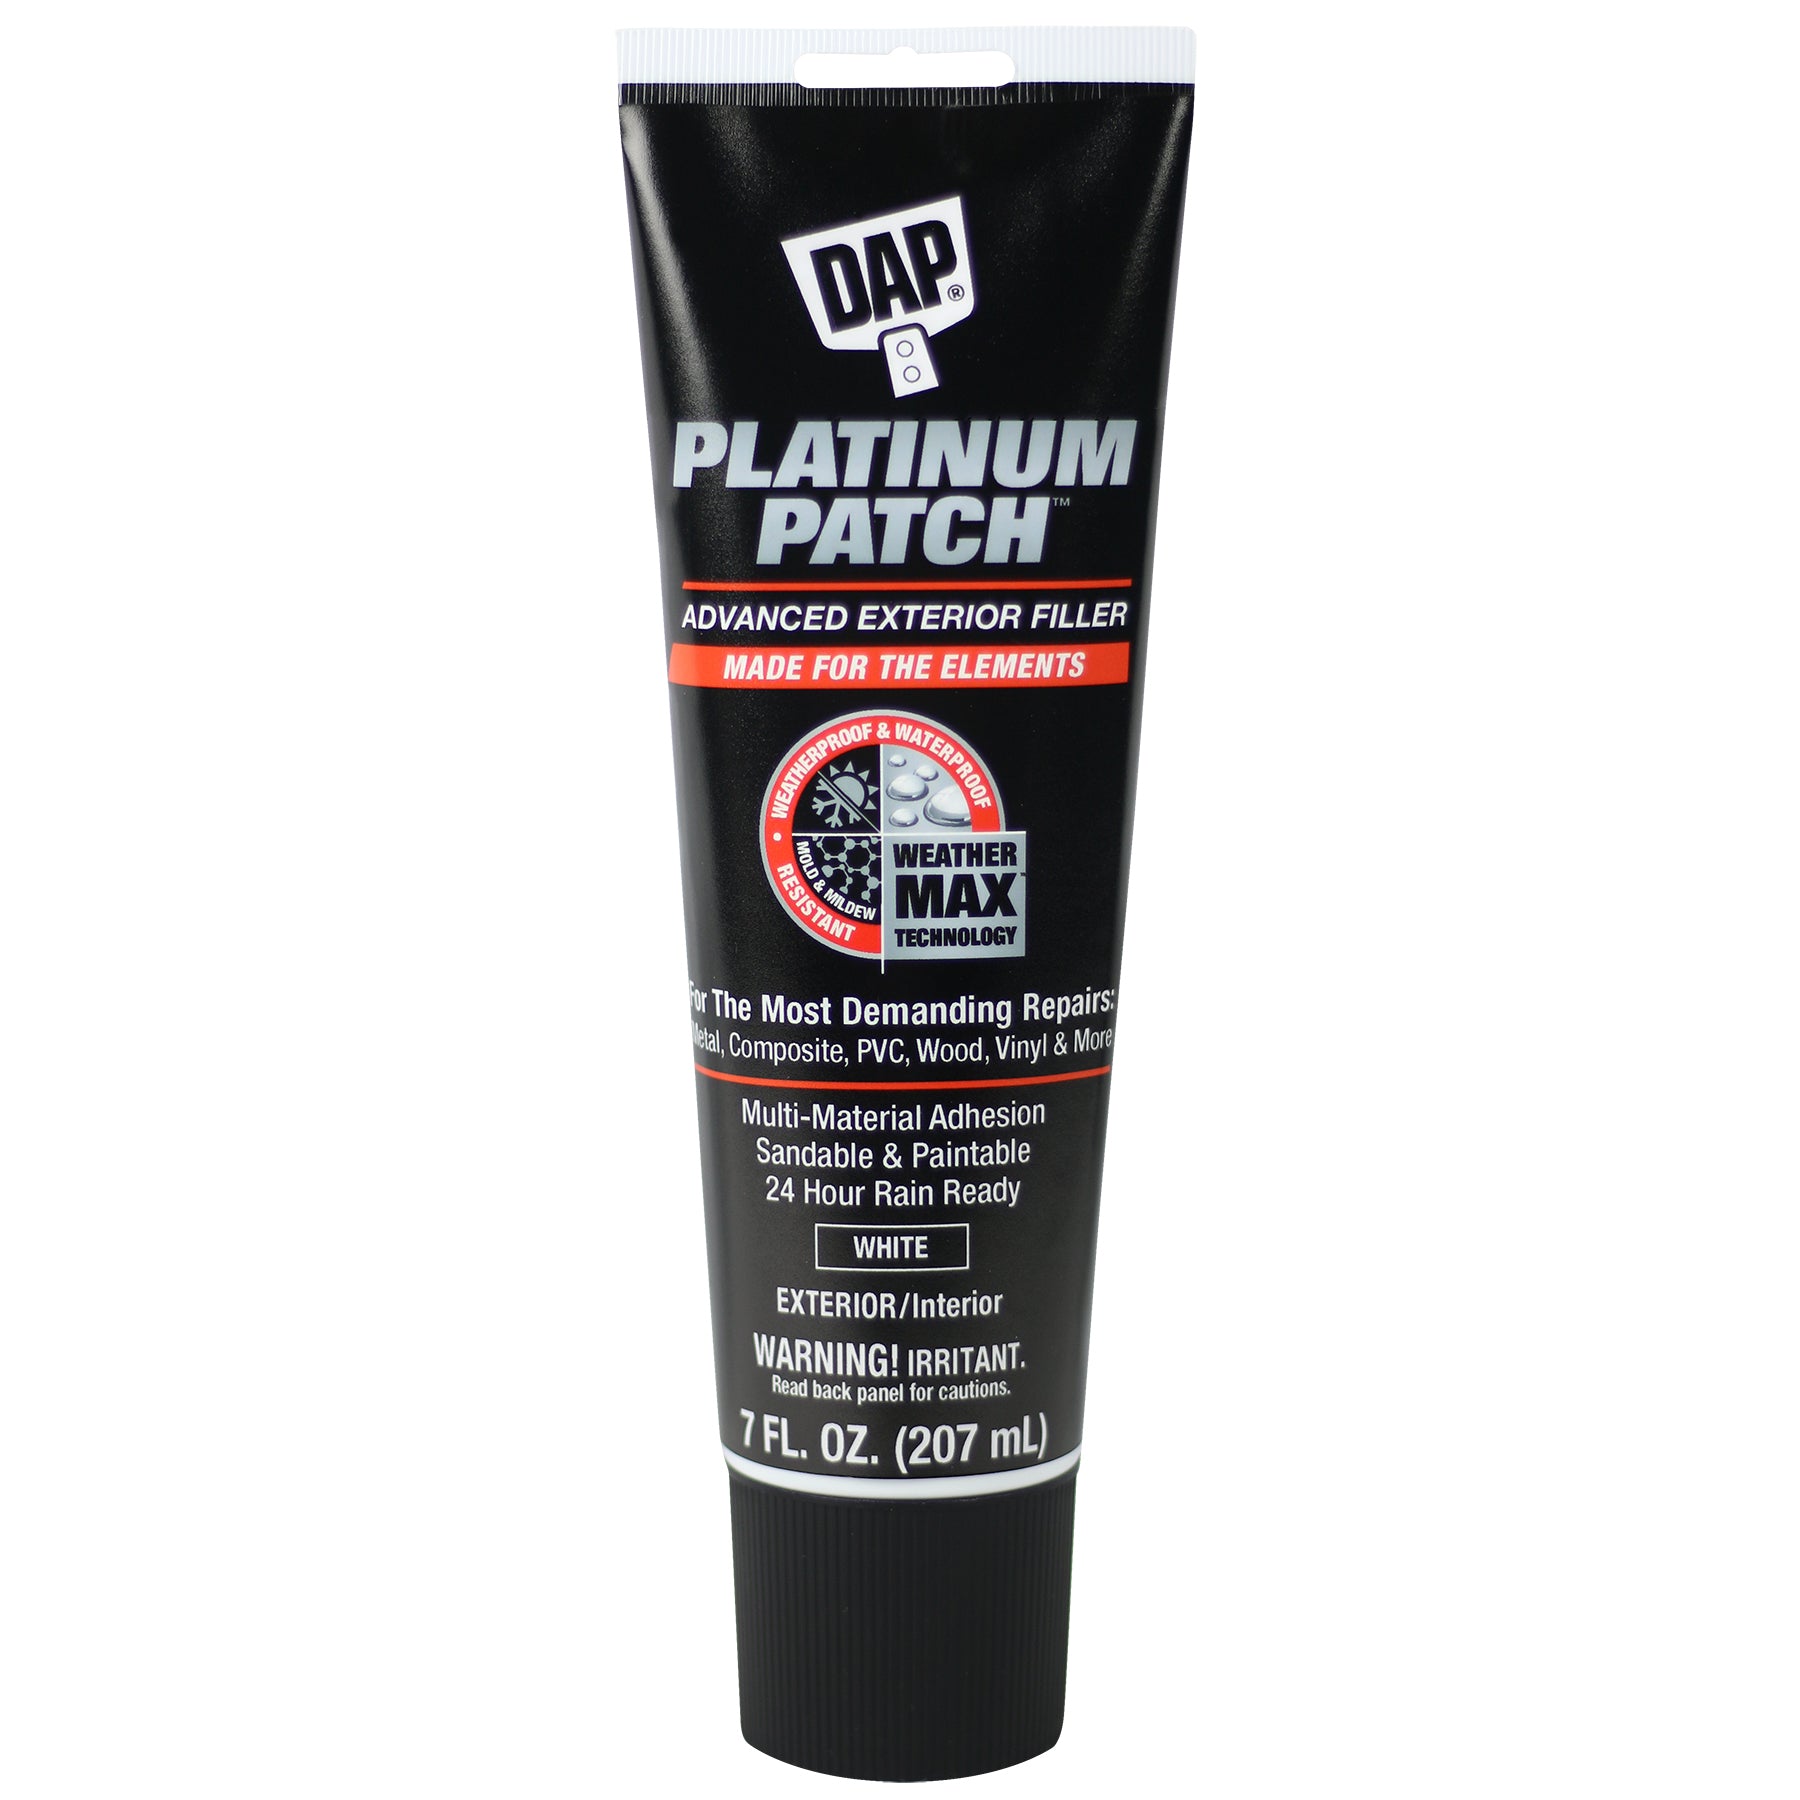 DAP Platinum Patch RTU